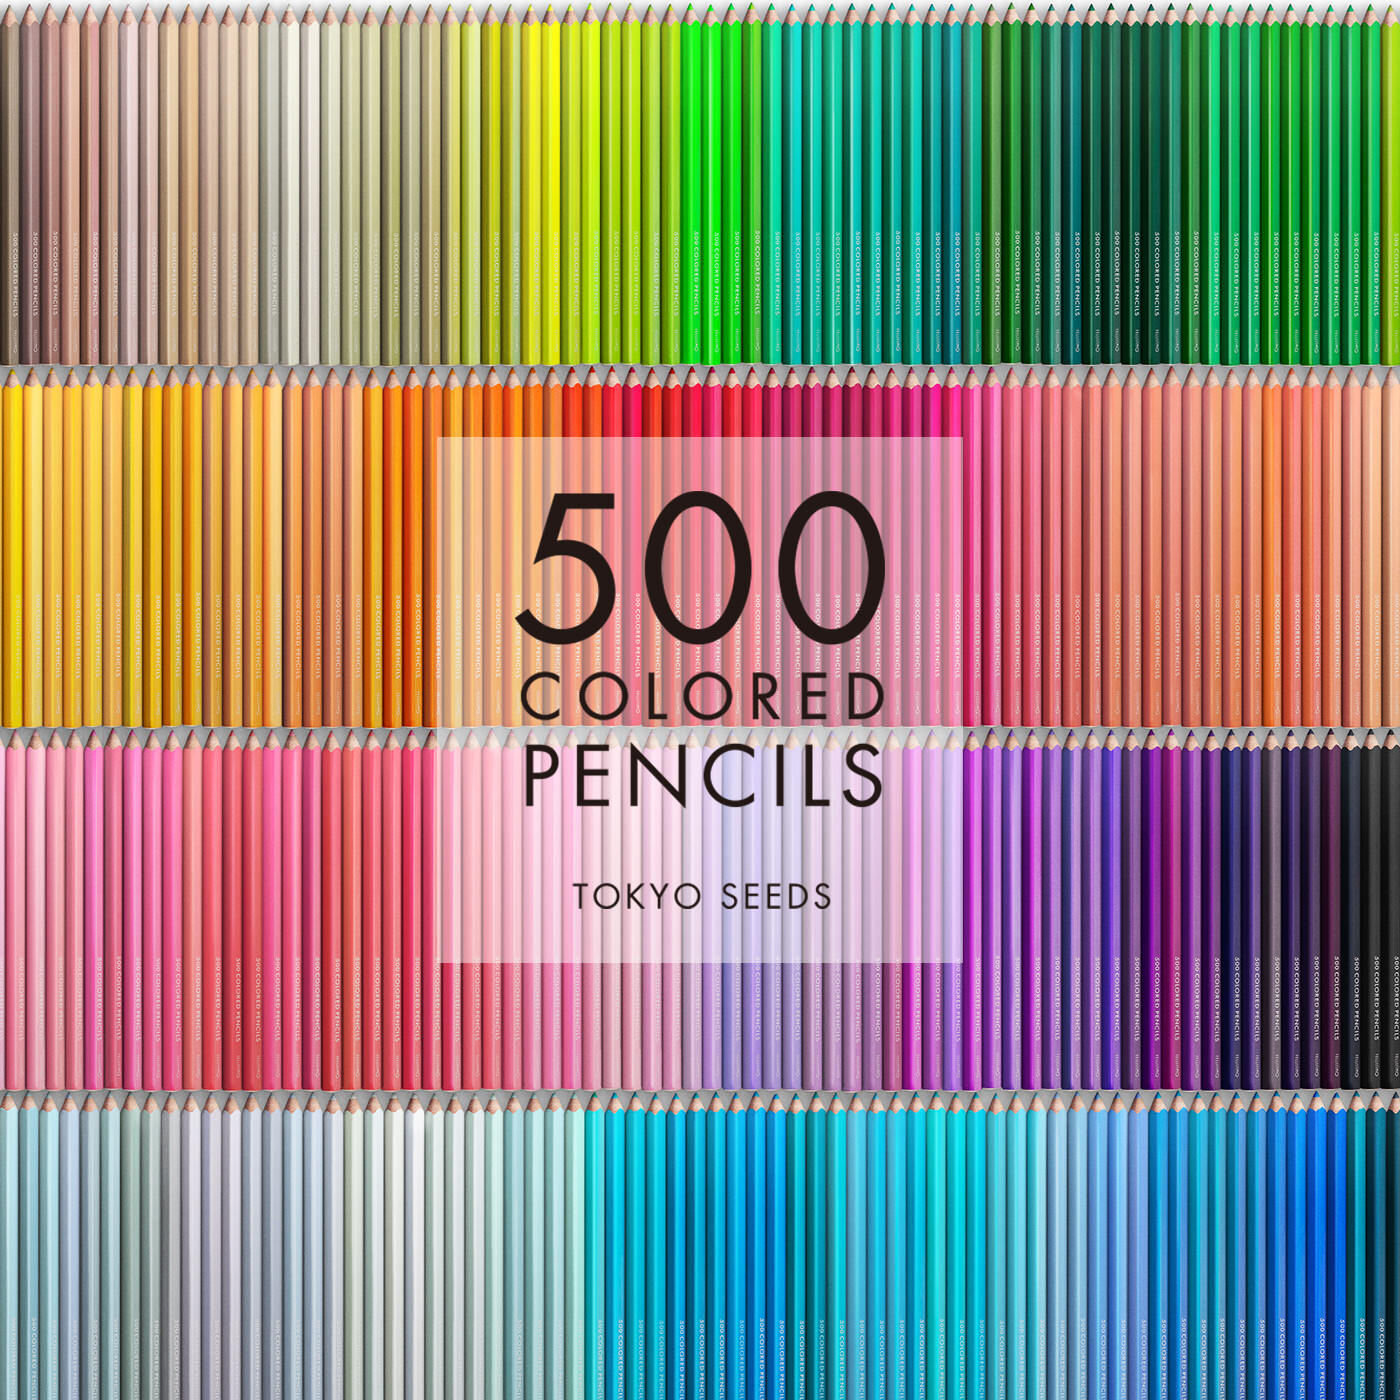 Real Stock|【361/500 SWEET PARADISE】500色の色えんぴつ TOKYO SEEDS|1992年、世界初の「500色」という膨大な色数の色えんぴつが誕生して以来、その販売数は発売当初から合わせると、世界55ヵ国10万セット以上。今回、メイド・イン・ジャパンにこだわり、すべてが新しく生まれ変わって登場しました。